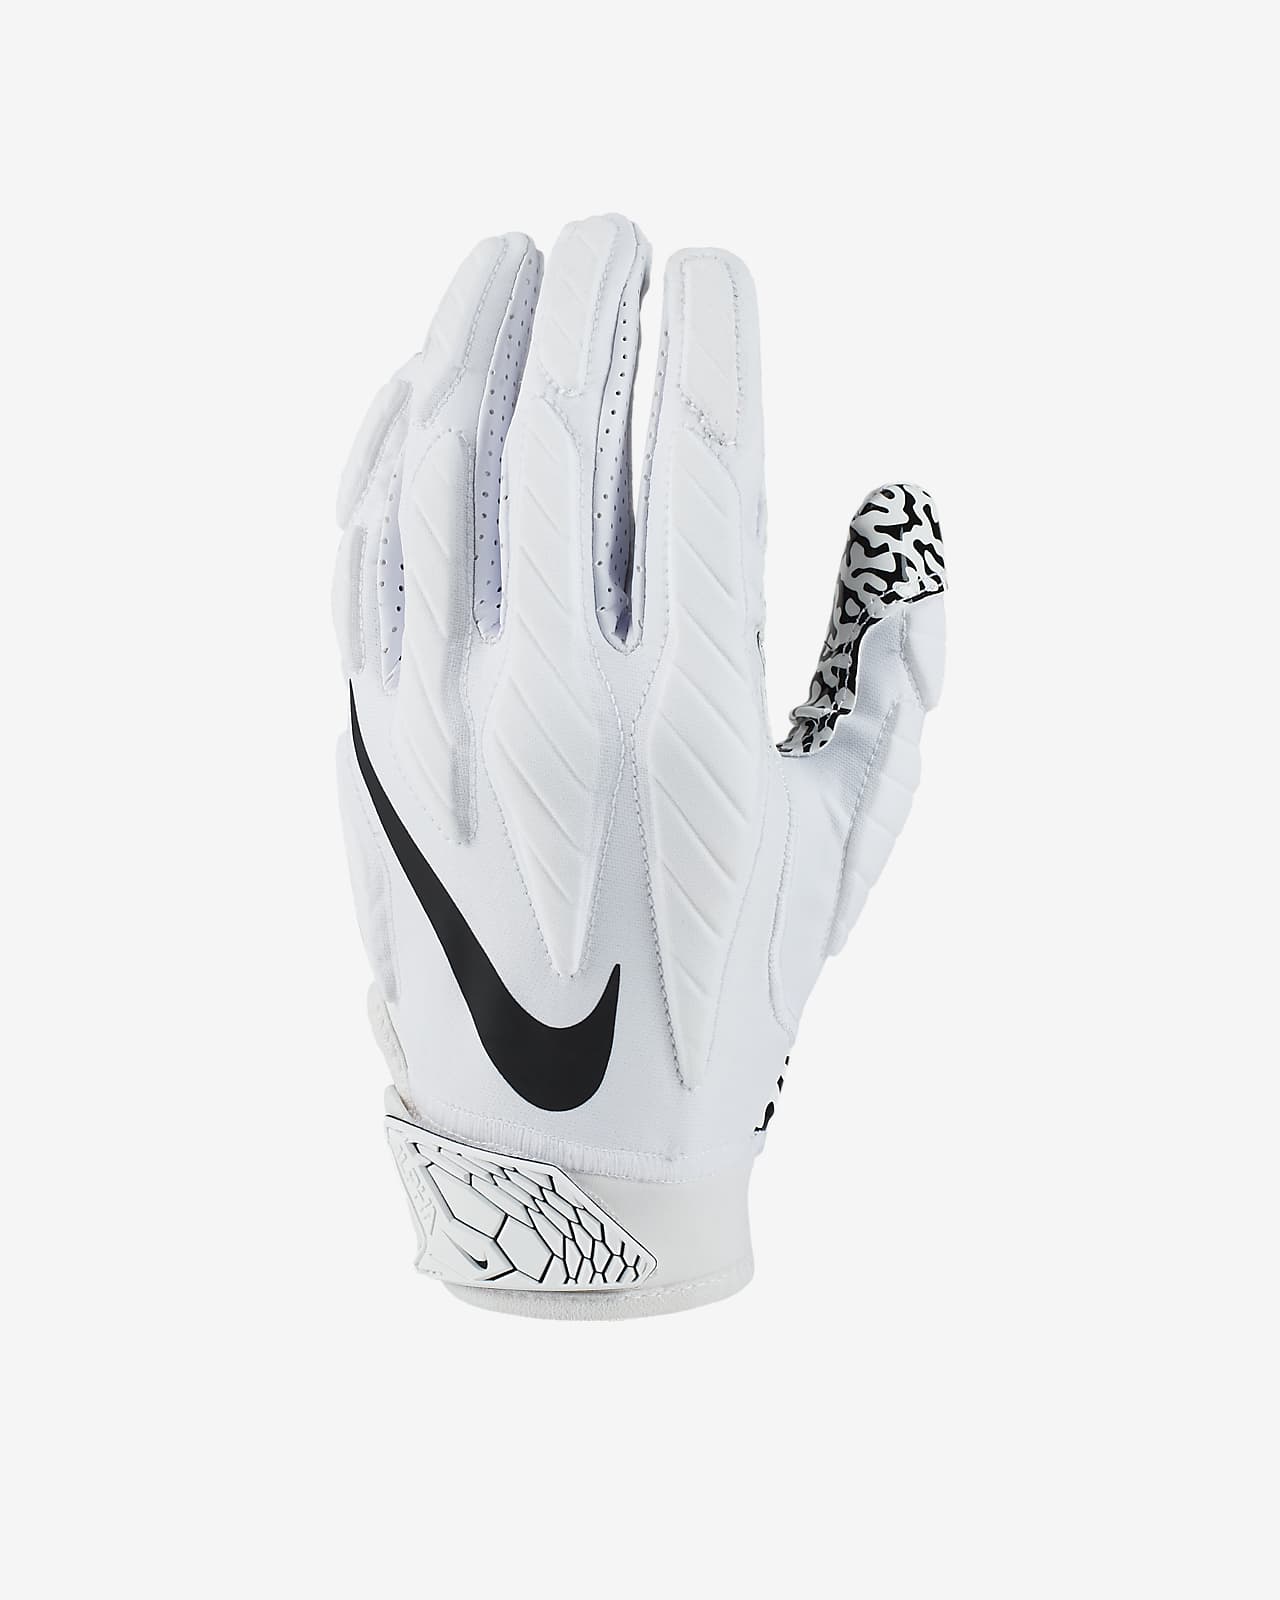 jordan football gloves for sale